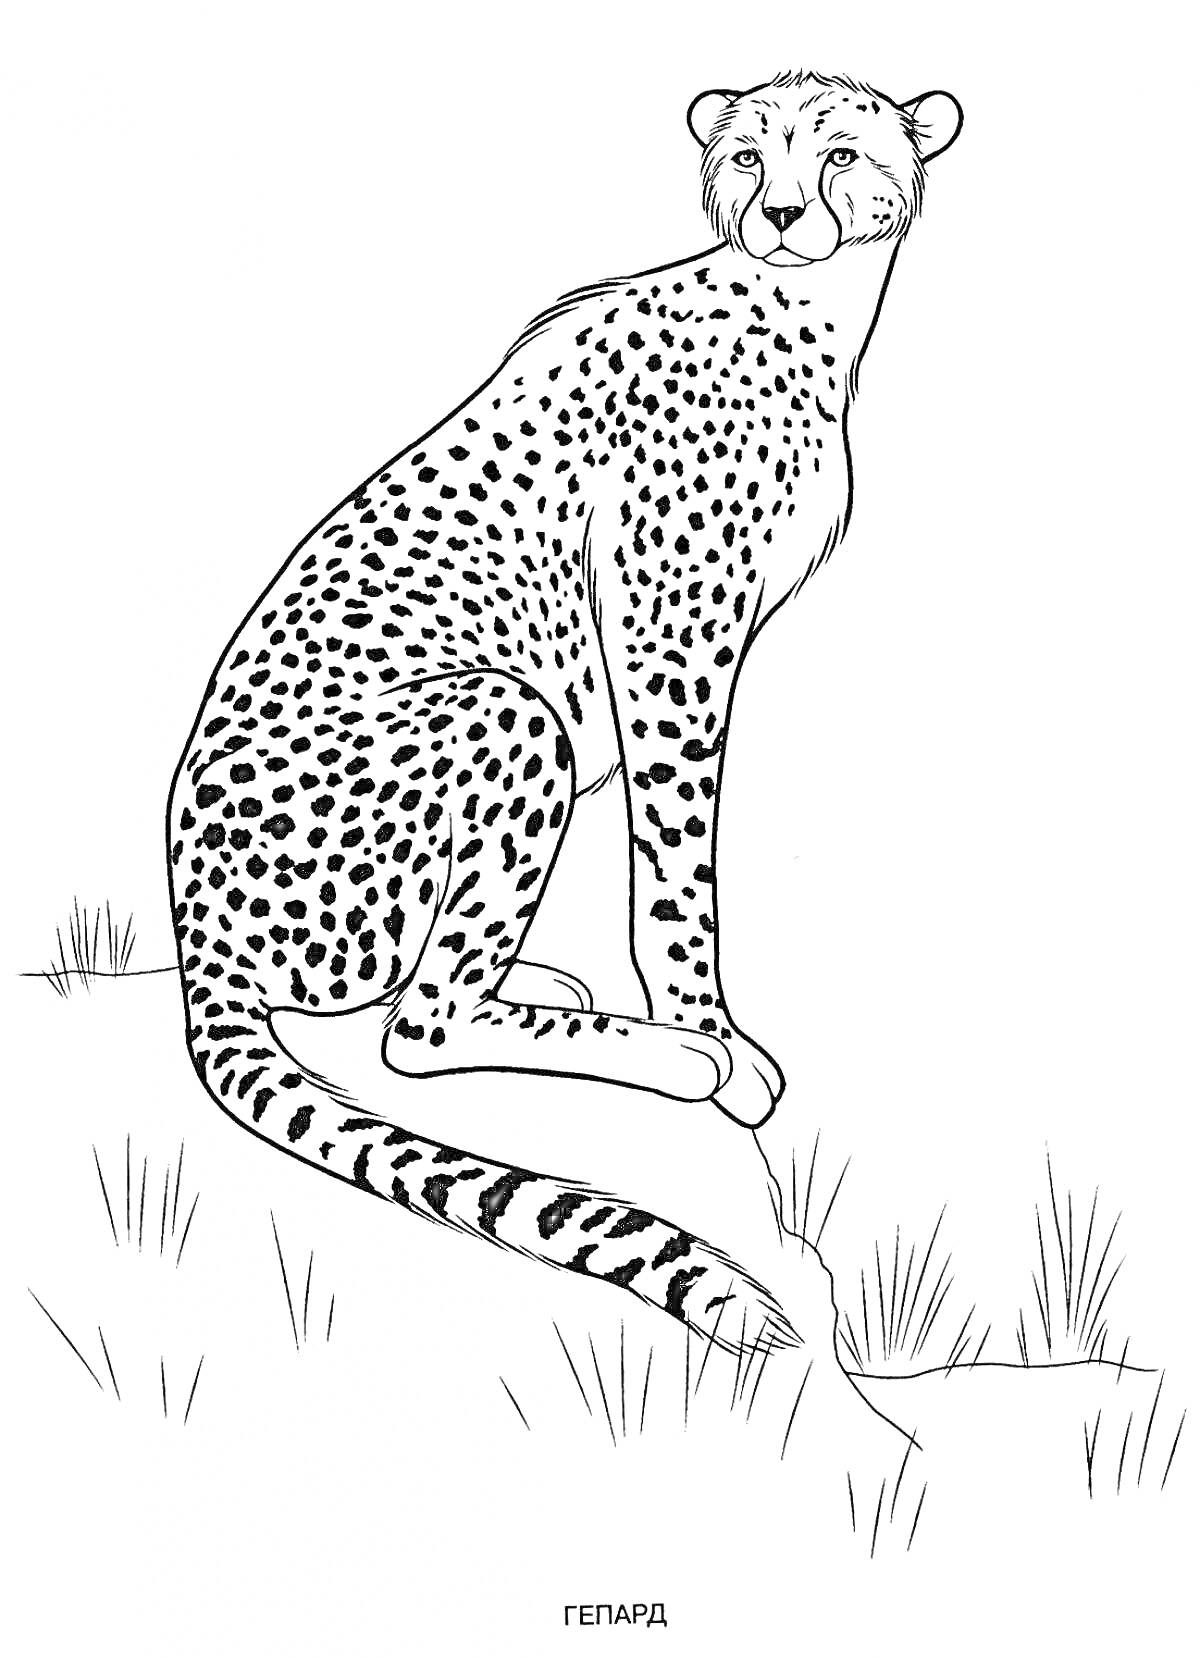 Гепард на камне с травой